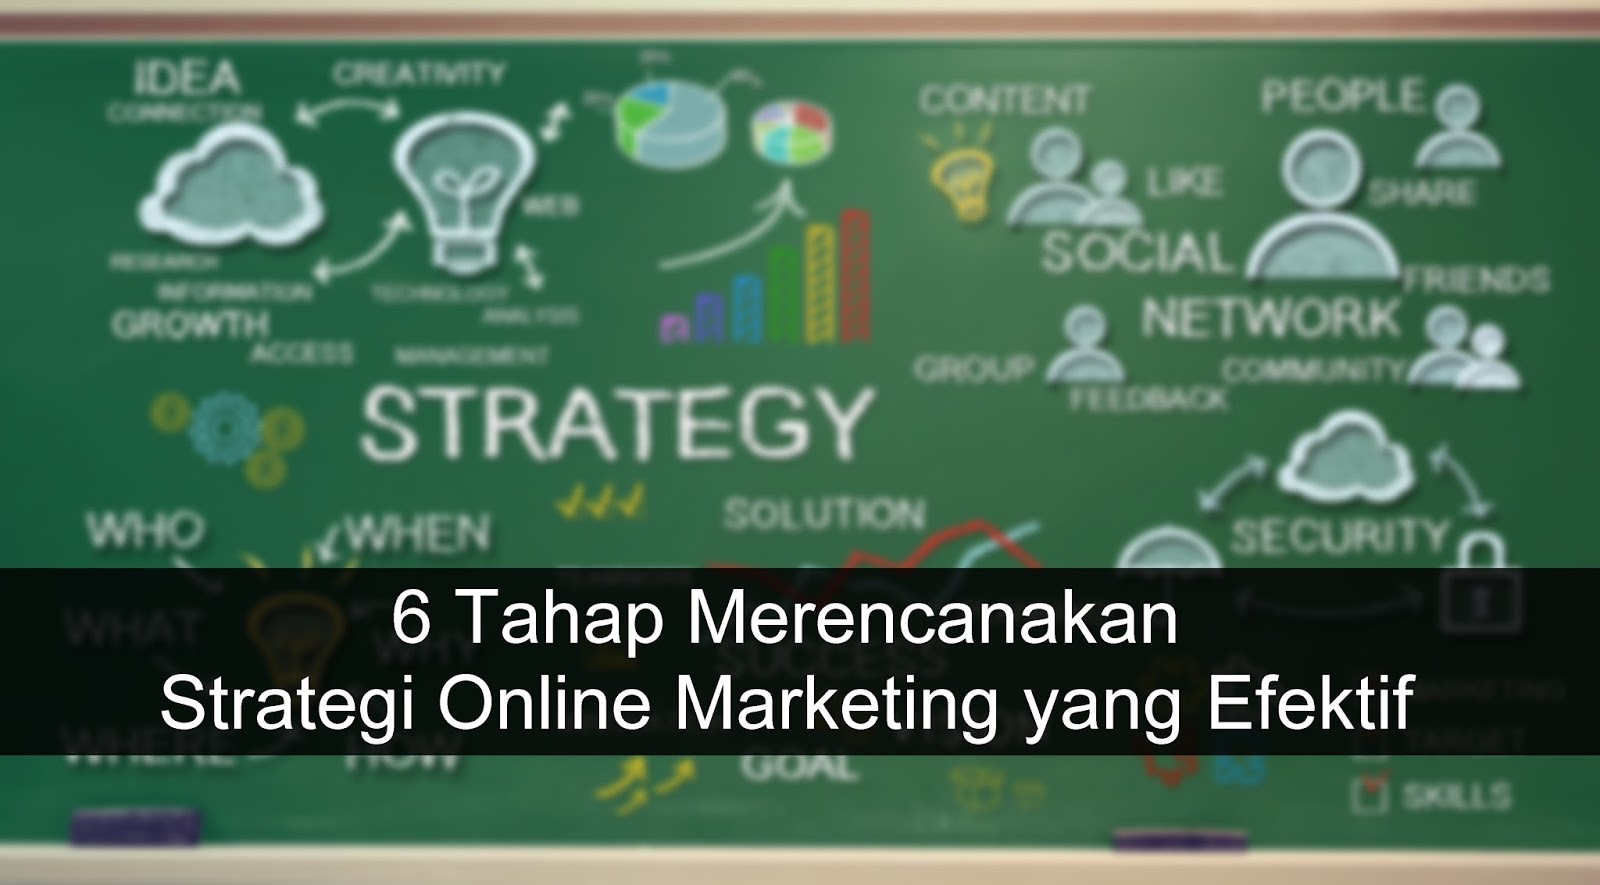 Tahap Merencanakan Strategi Online Marketing yang Efektif